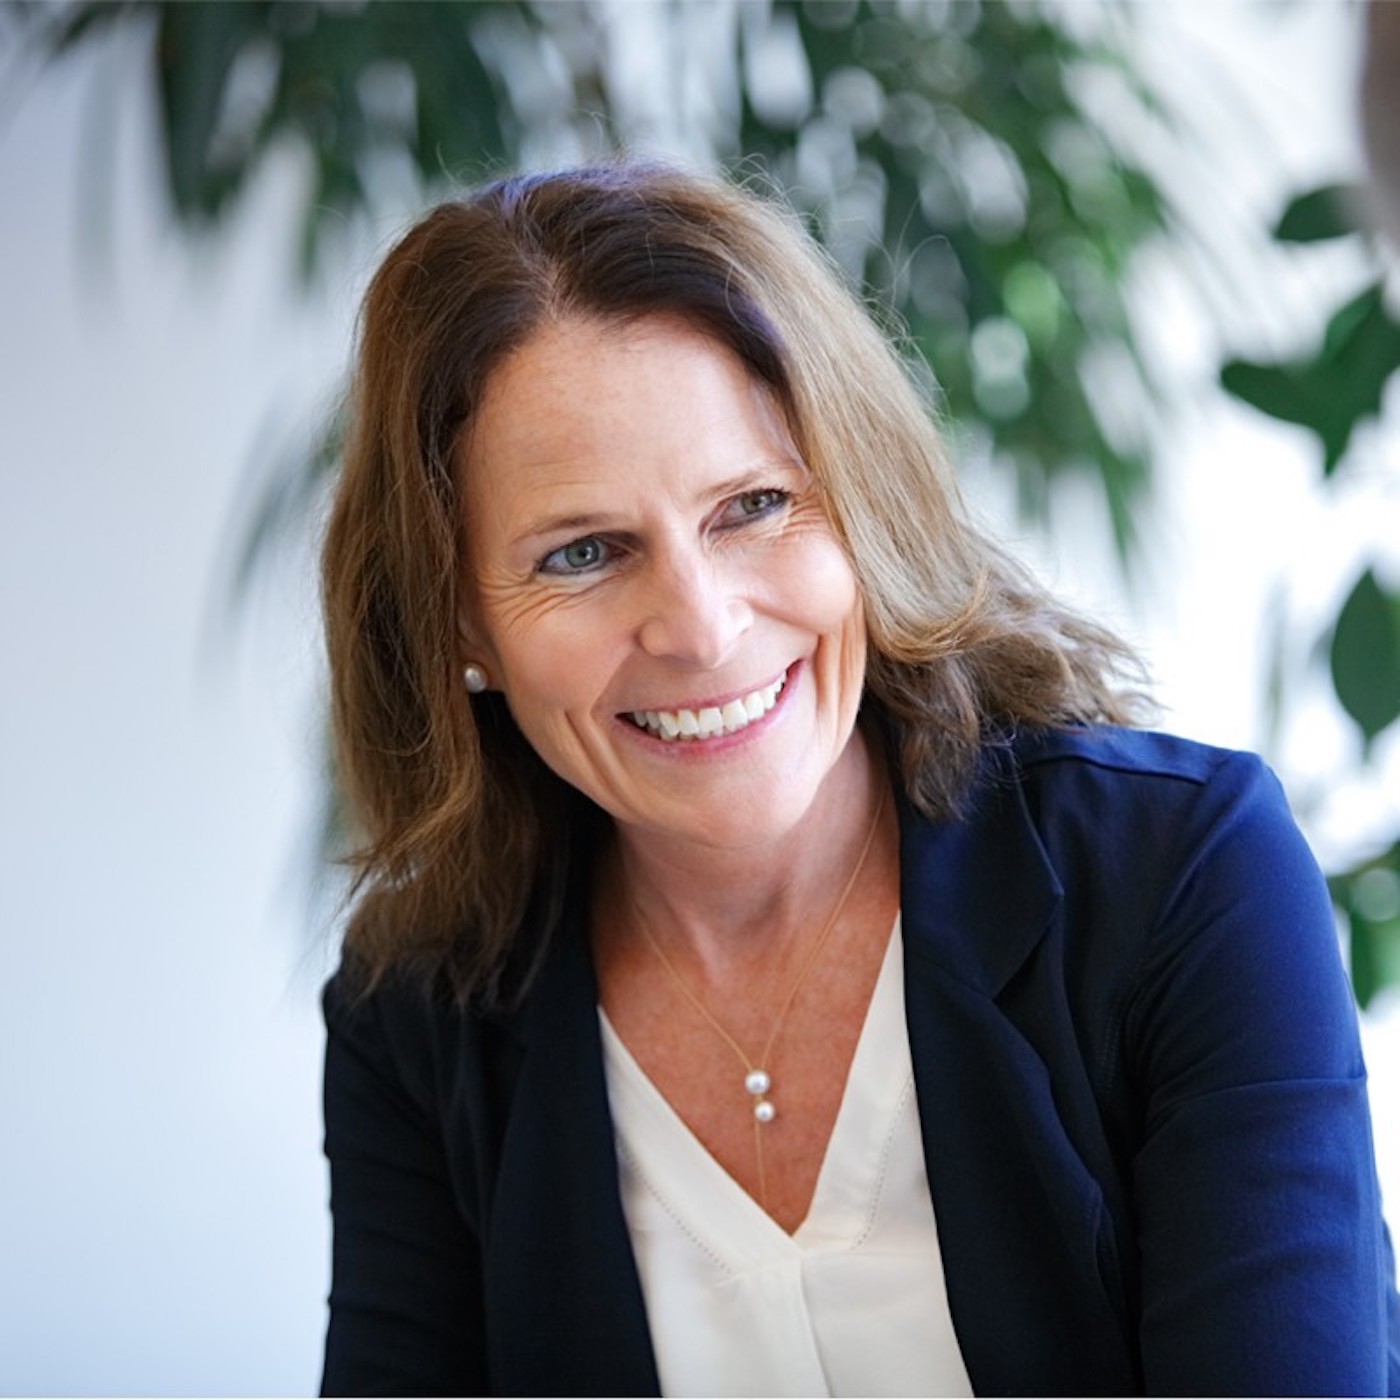 Folge 95 - Marion Henschel - Strabag PFS - Neue CEO wird als Person visibler, garantiert aber strategische Kontinuität